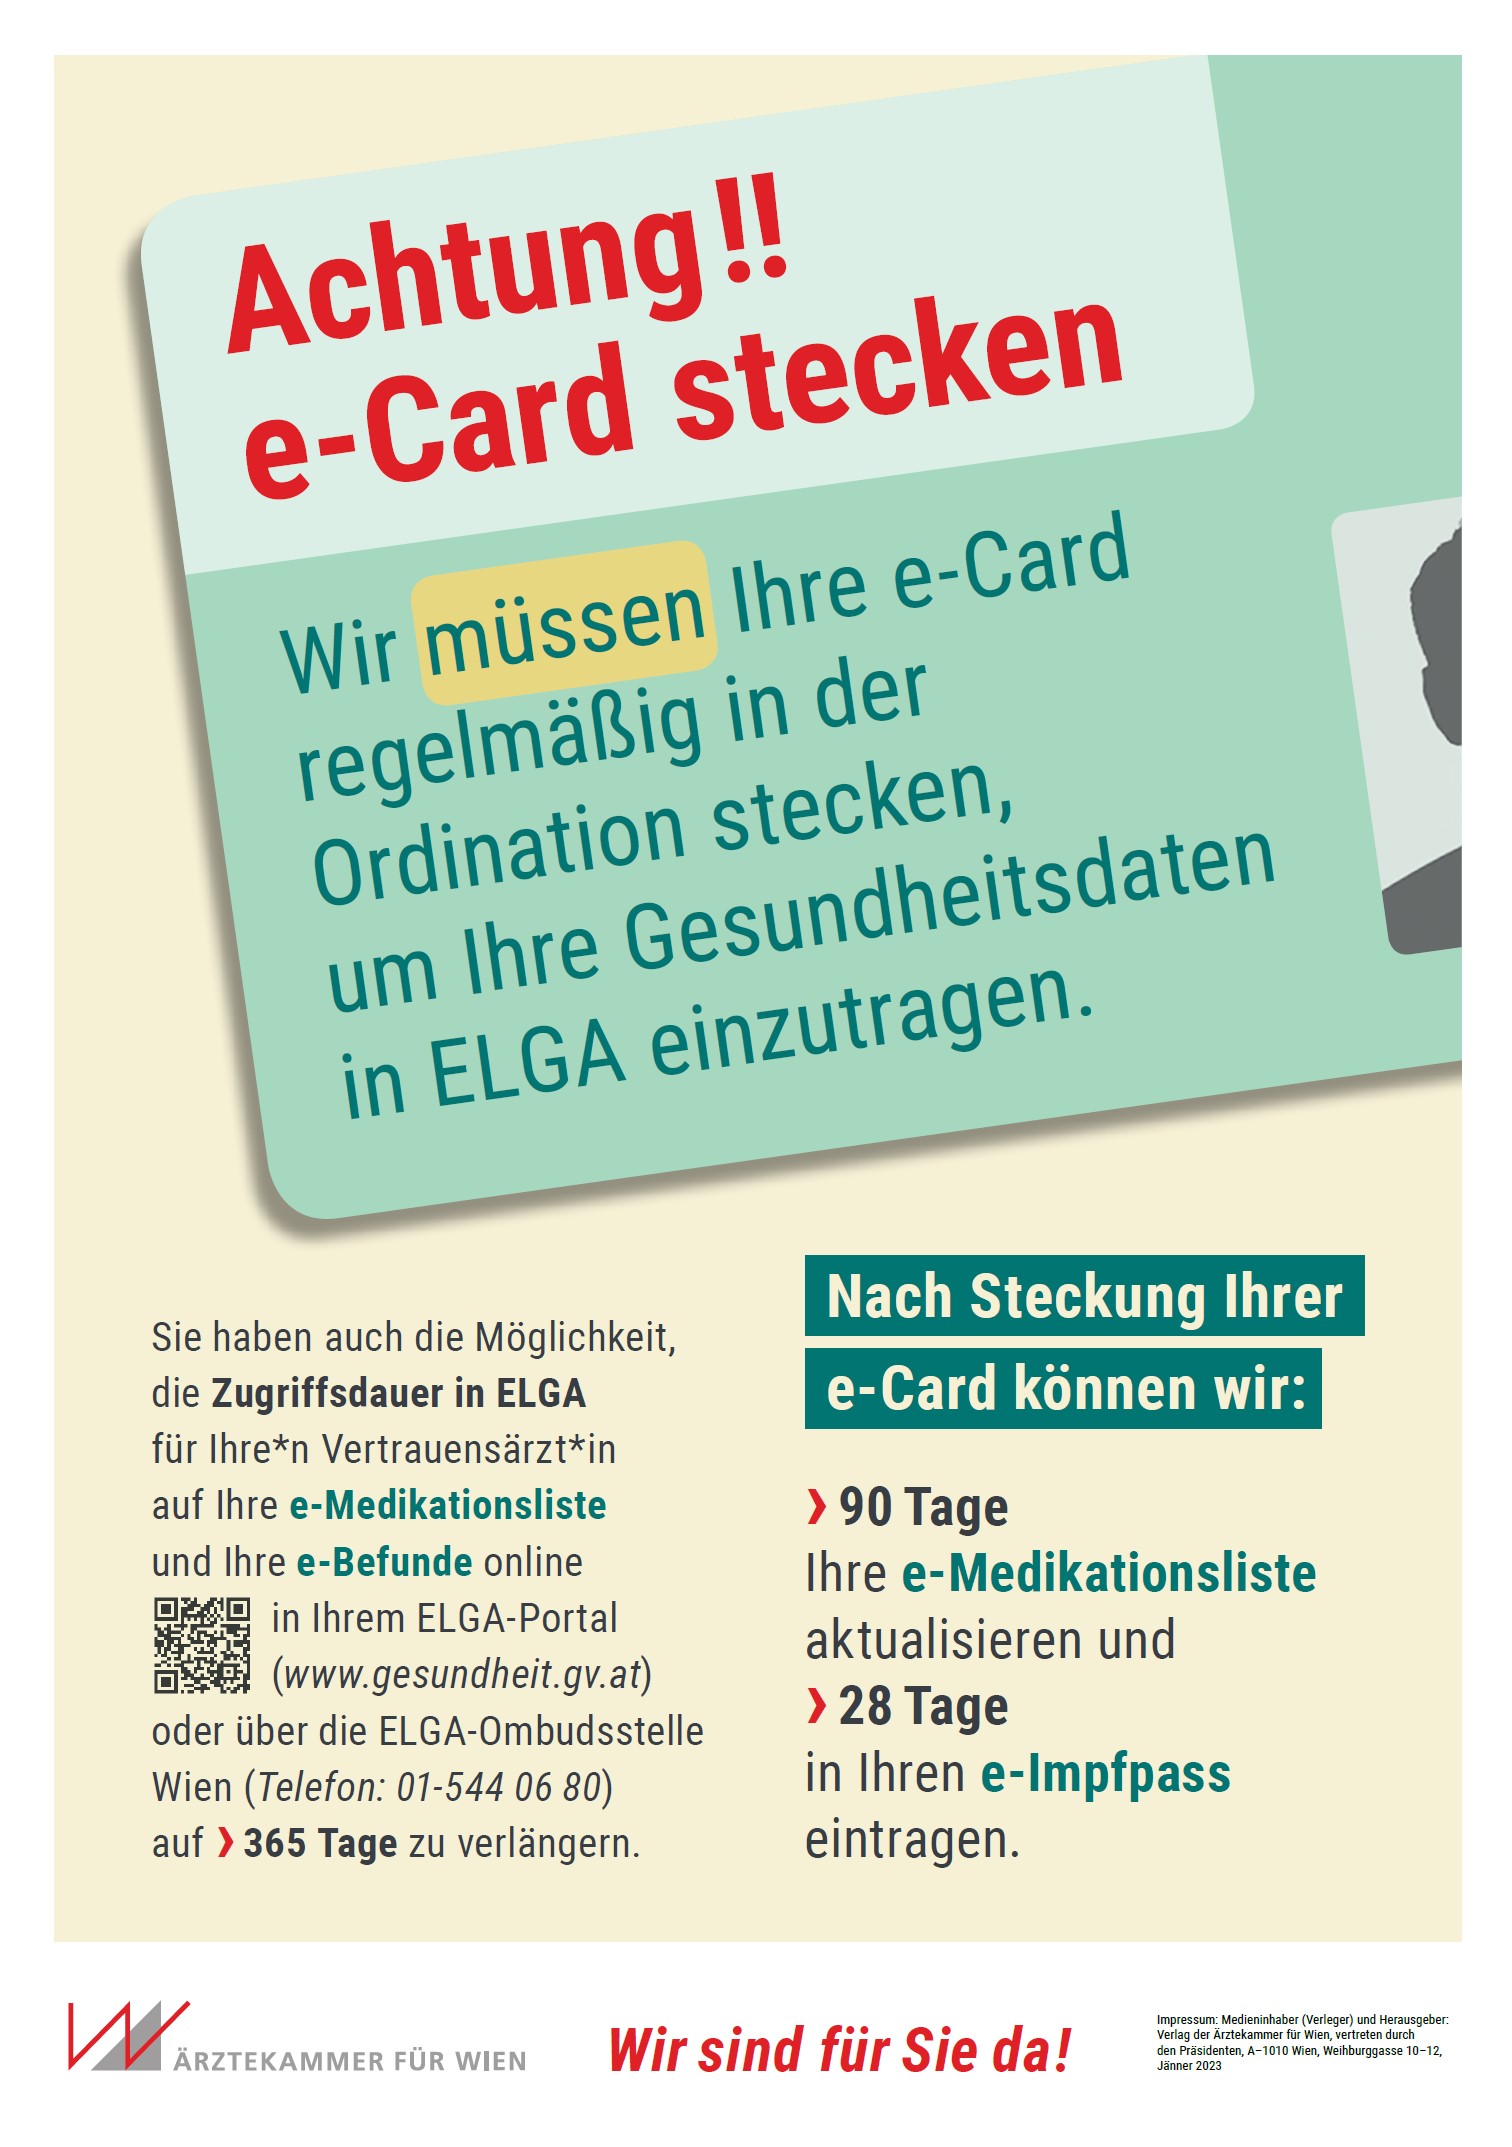 Informationen bezüglich eCard der Ärztekammer Wiens